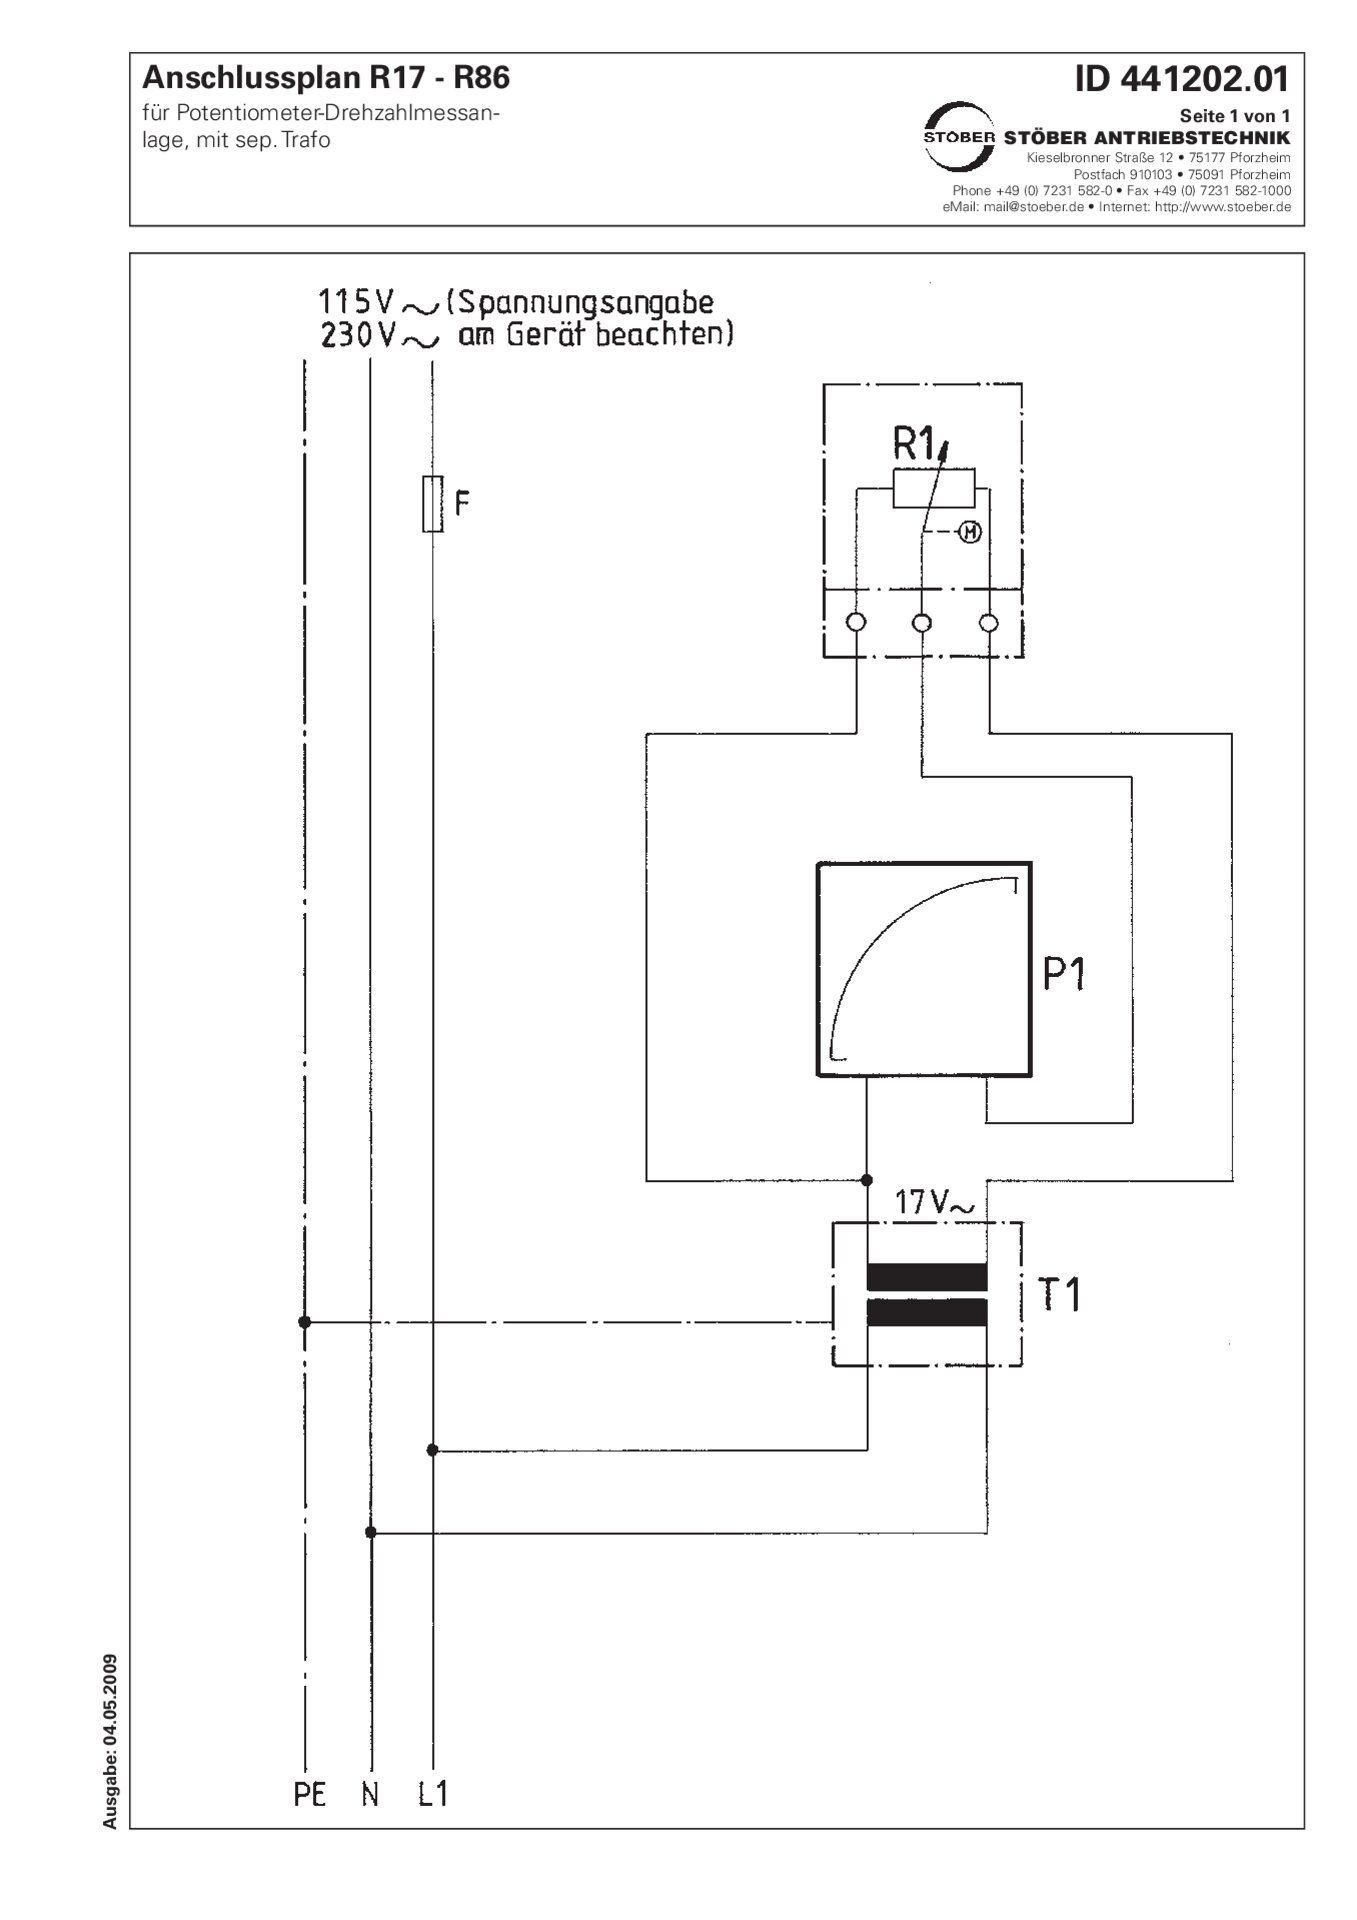 Schema di allacciamento R17-R86 sistema di misurazione della velocità - potenziometro + trasformatore separato